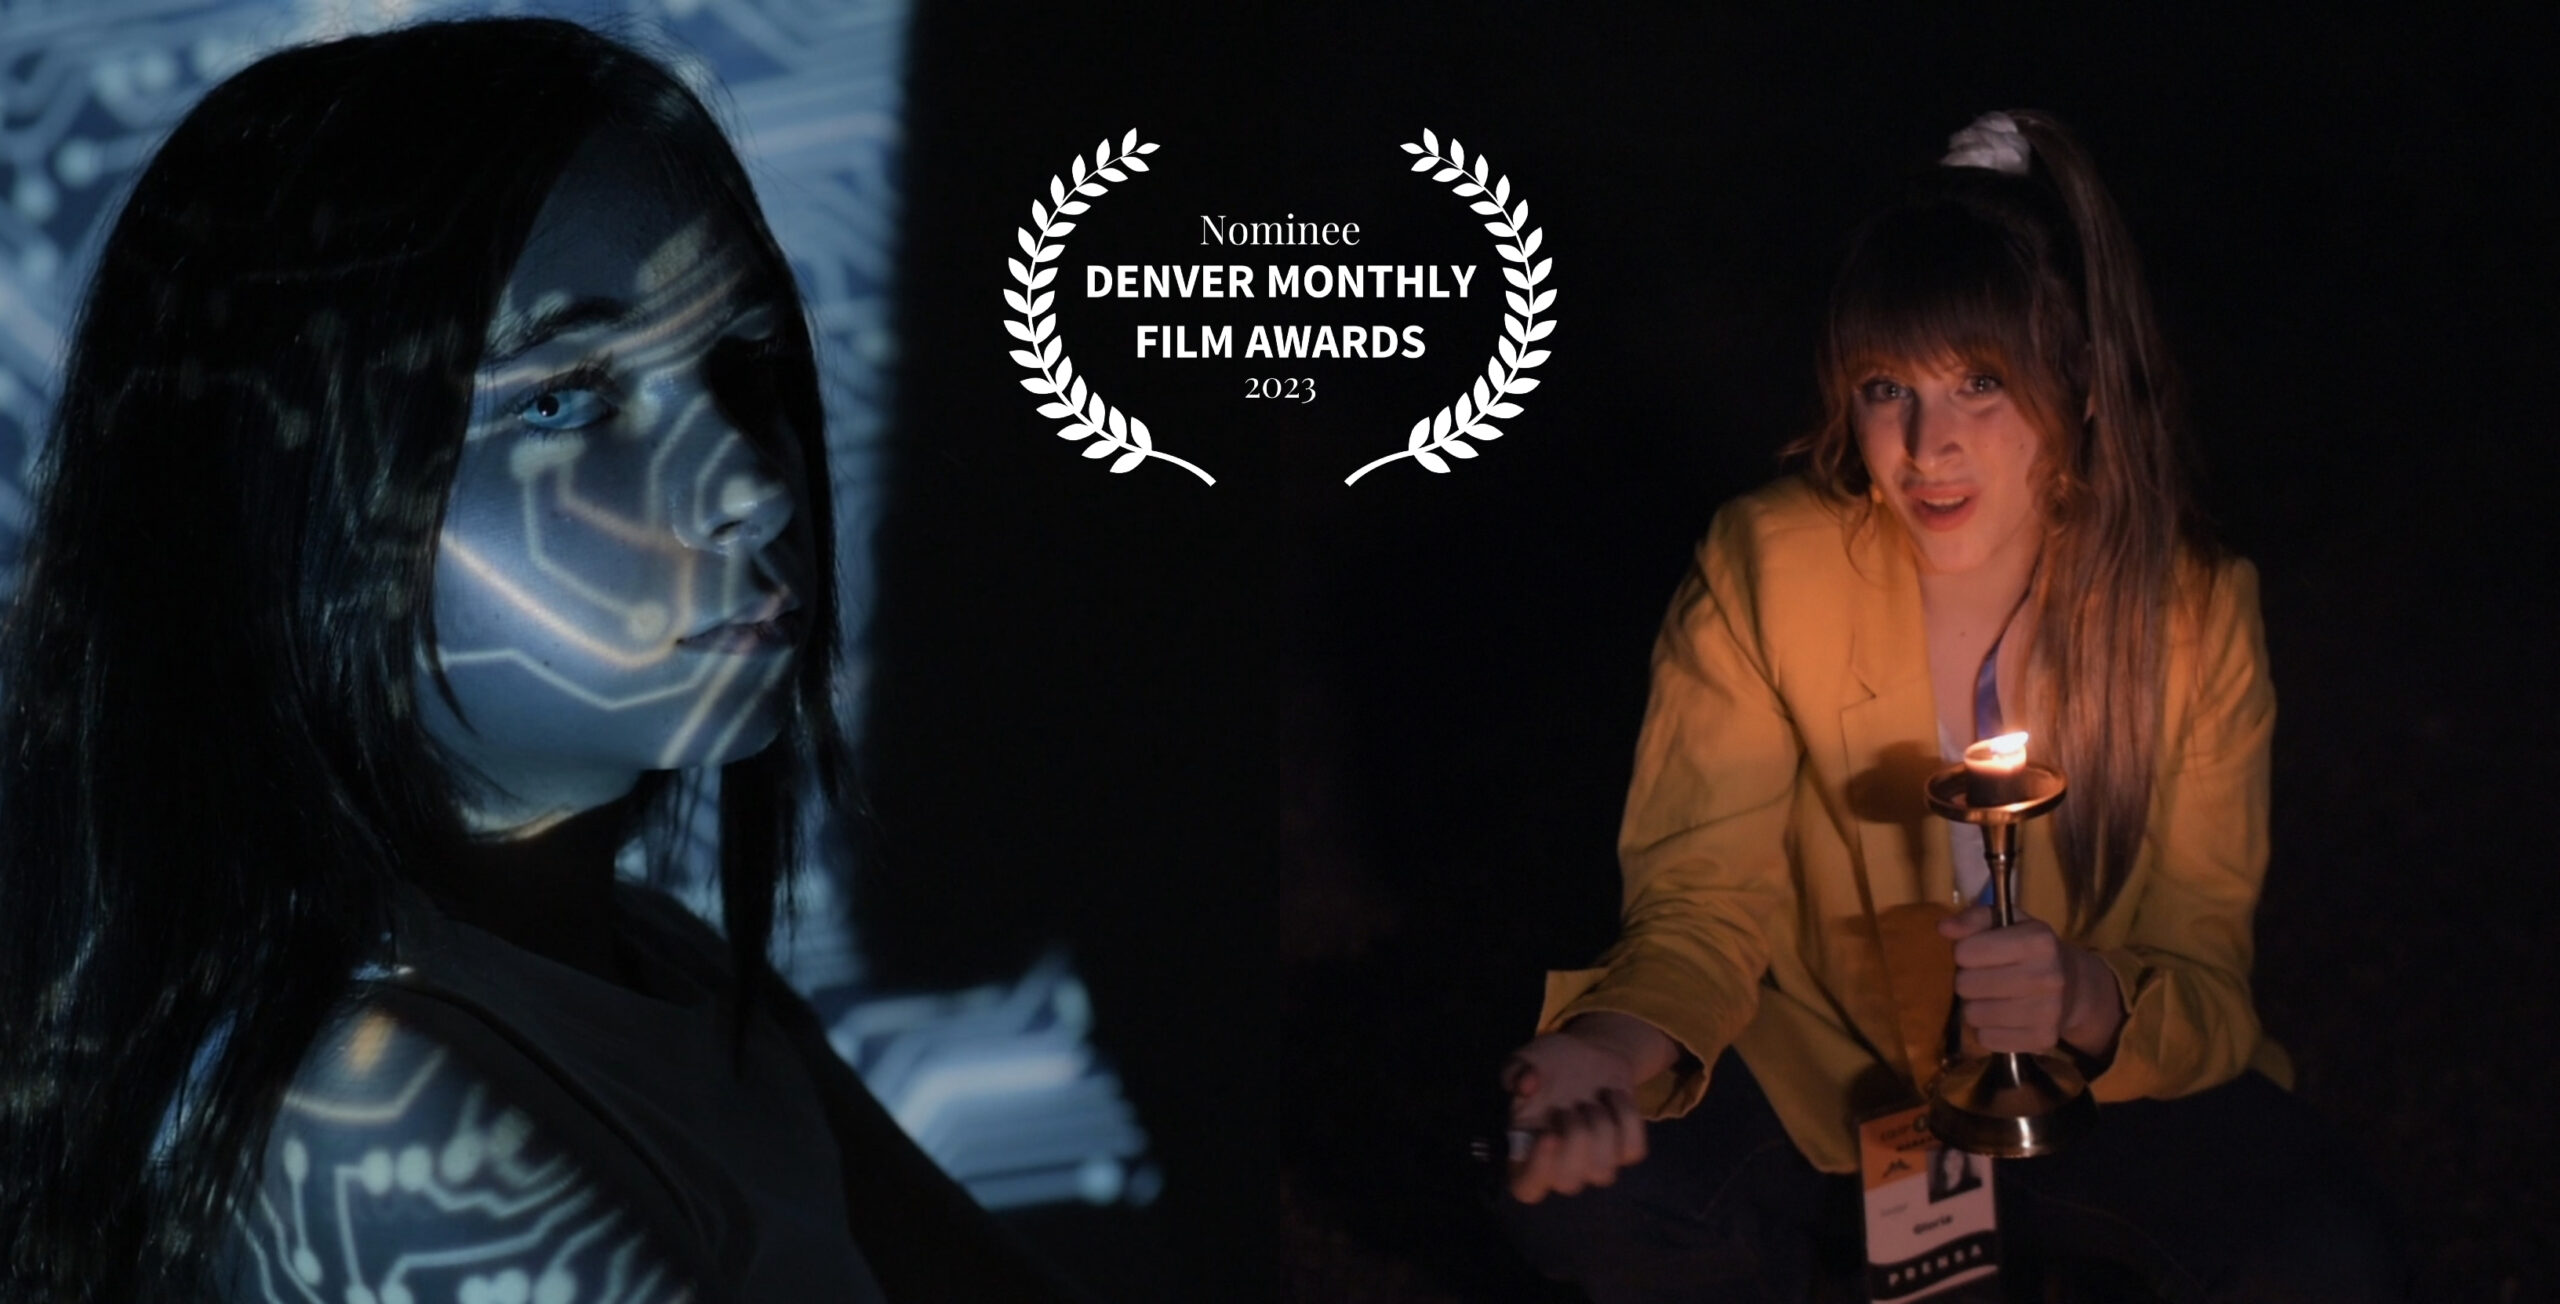 Denver Monthly Film Awards